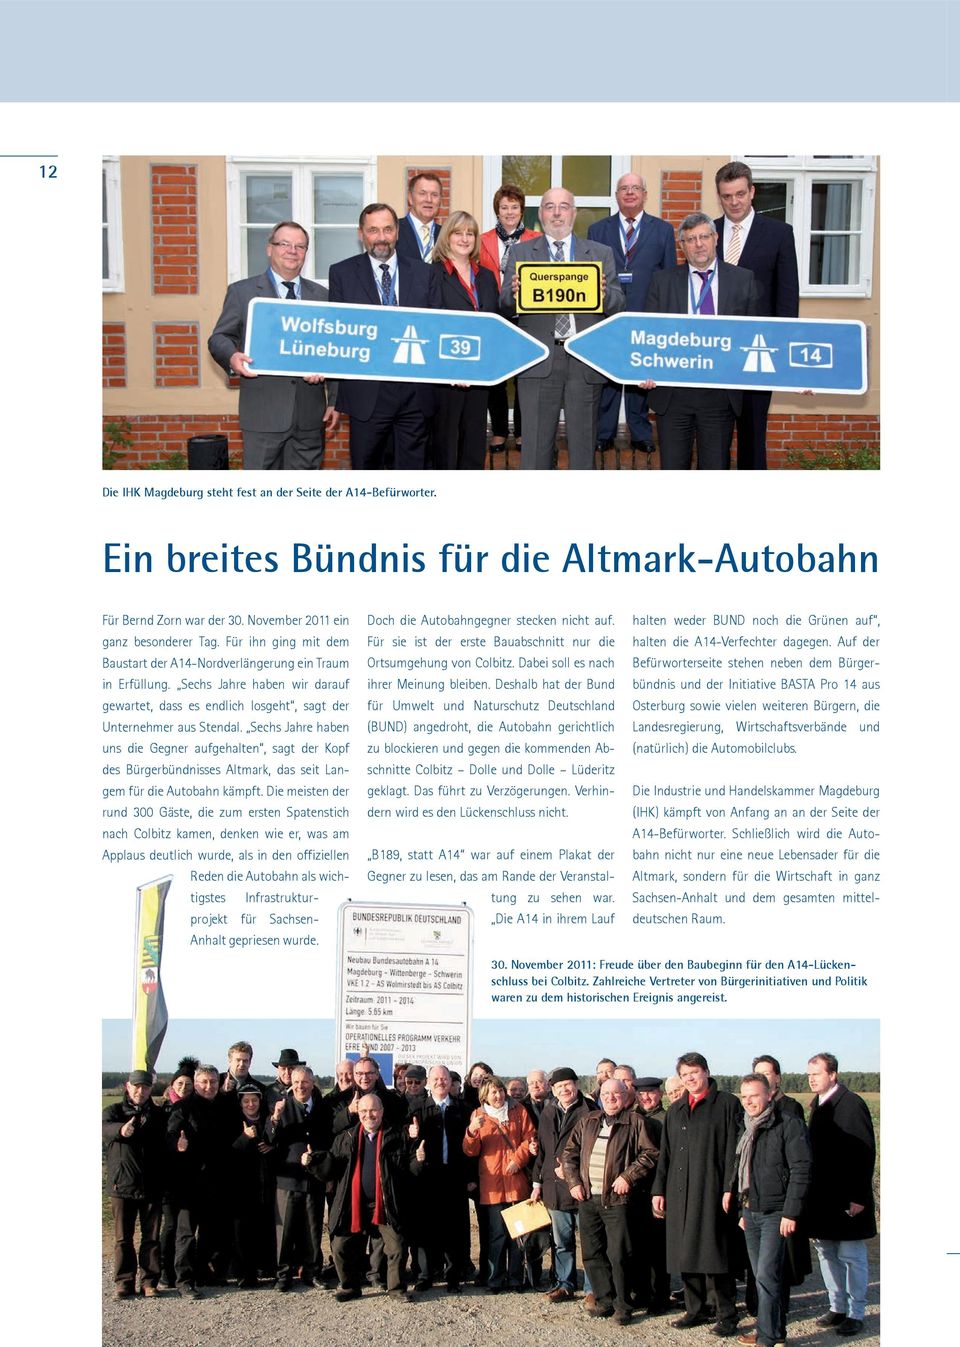 Sechs Jahre haben uns die Gegner aufgehalten, sagt der Kopf des Bürgerbündnisses Altmark, das seit Langem für die Autobahn kämpft.